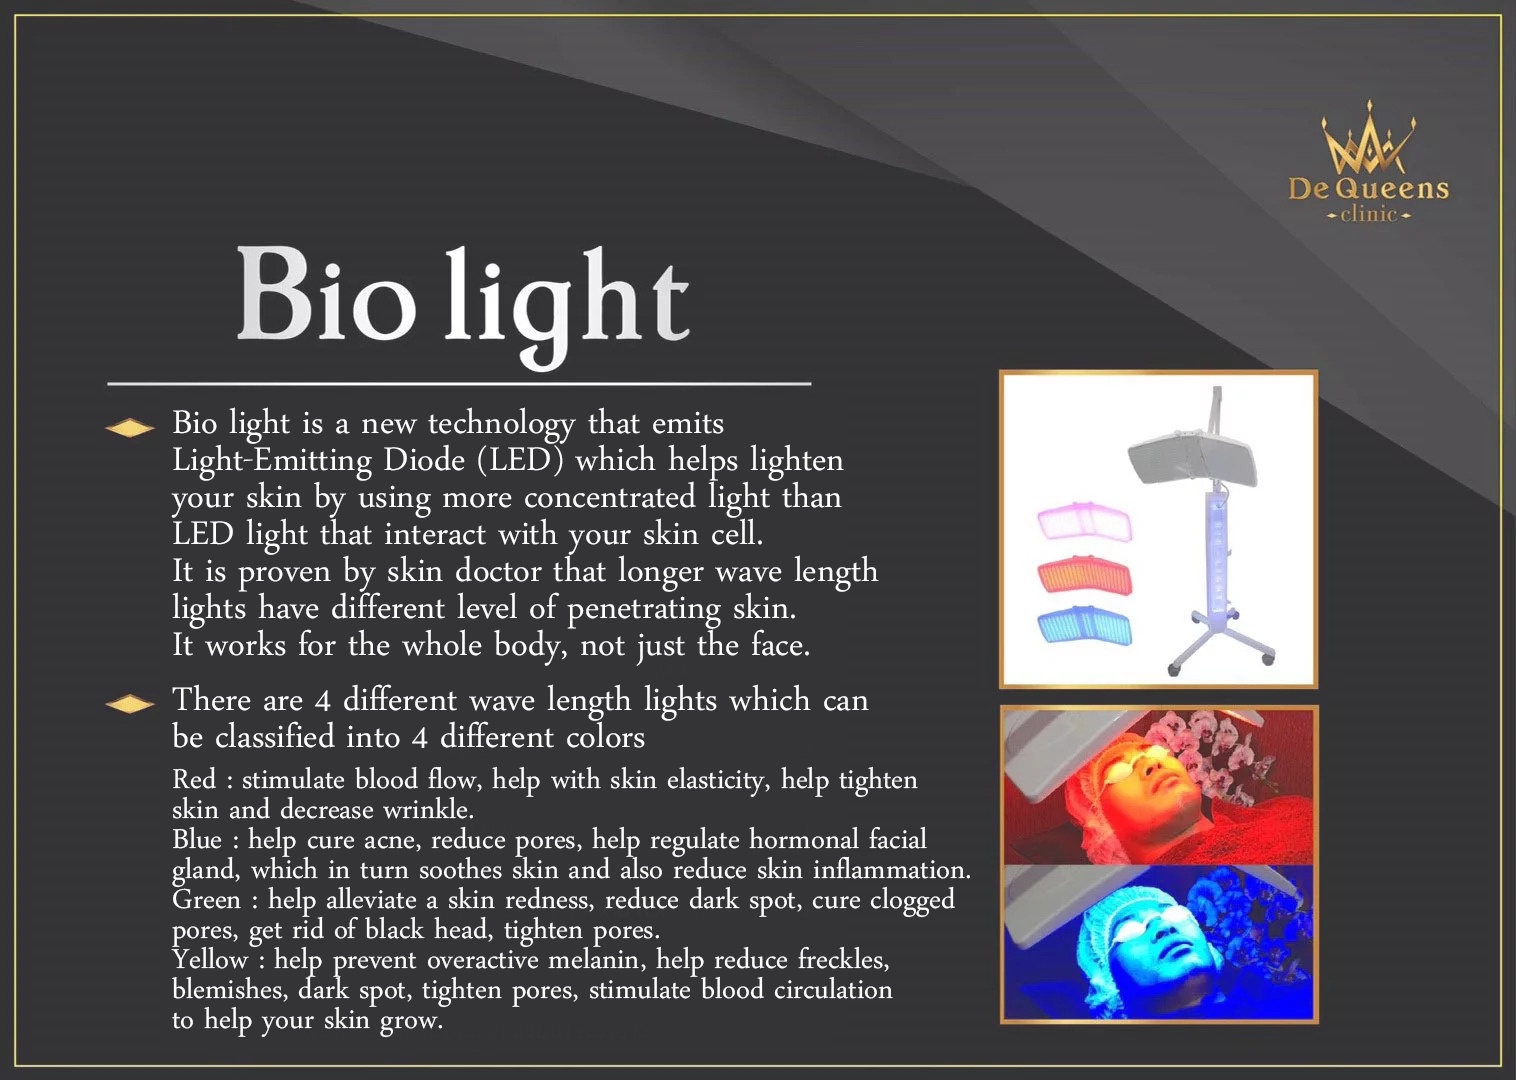 Bio light